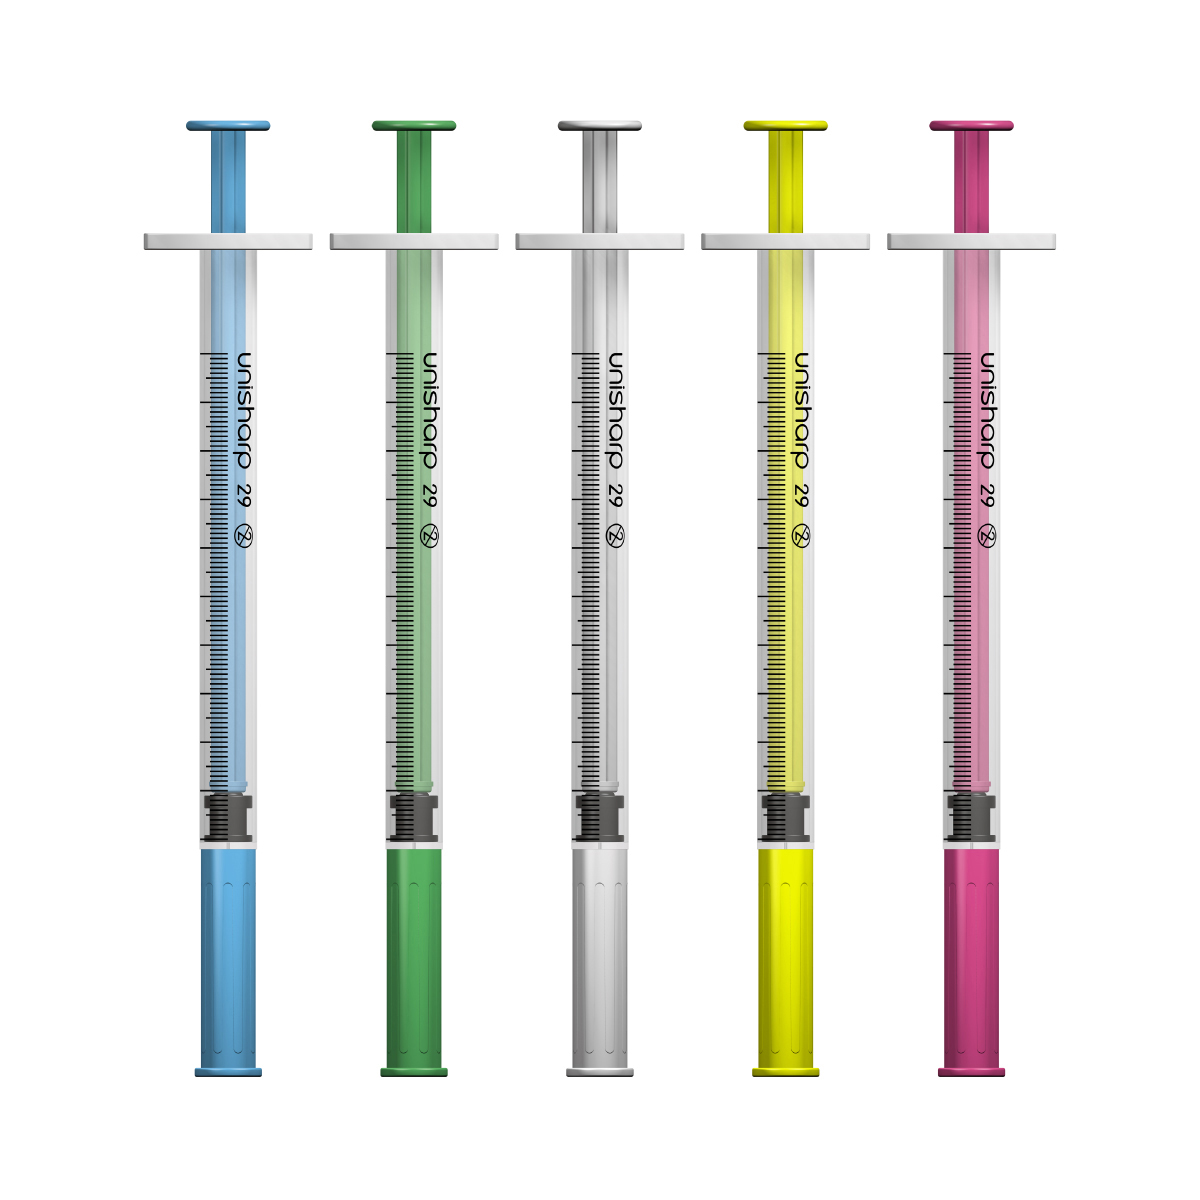 Unisharp 1ml 29G fixed needle syringe: mixed colours